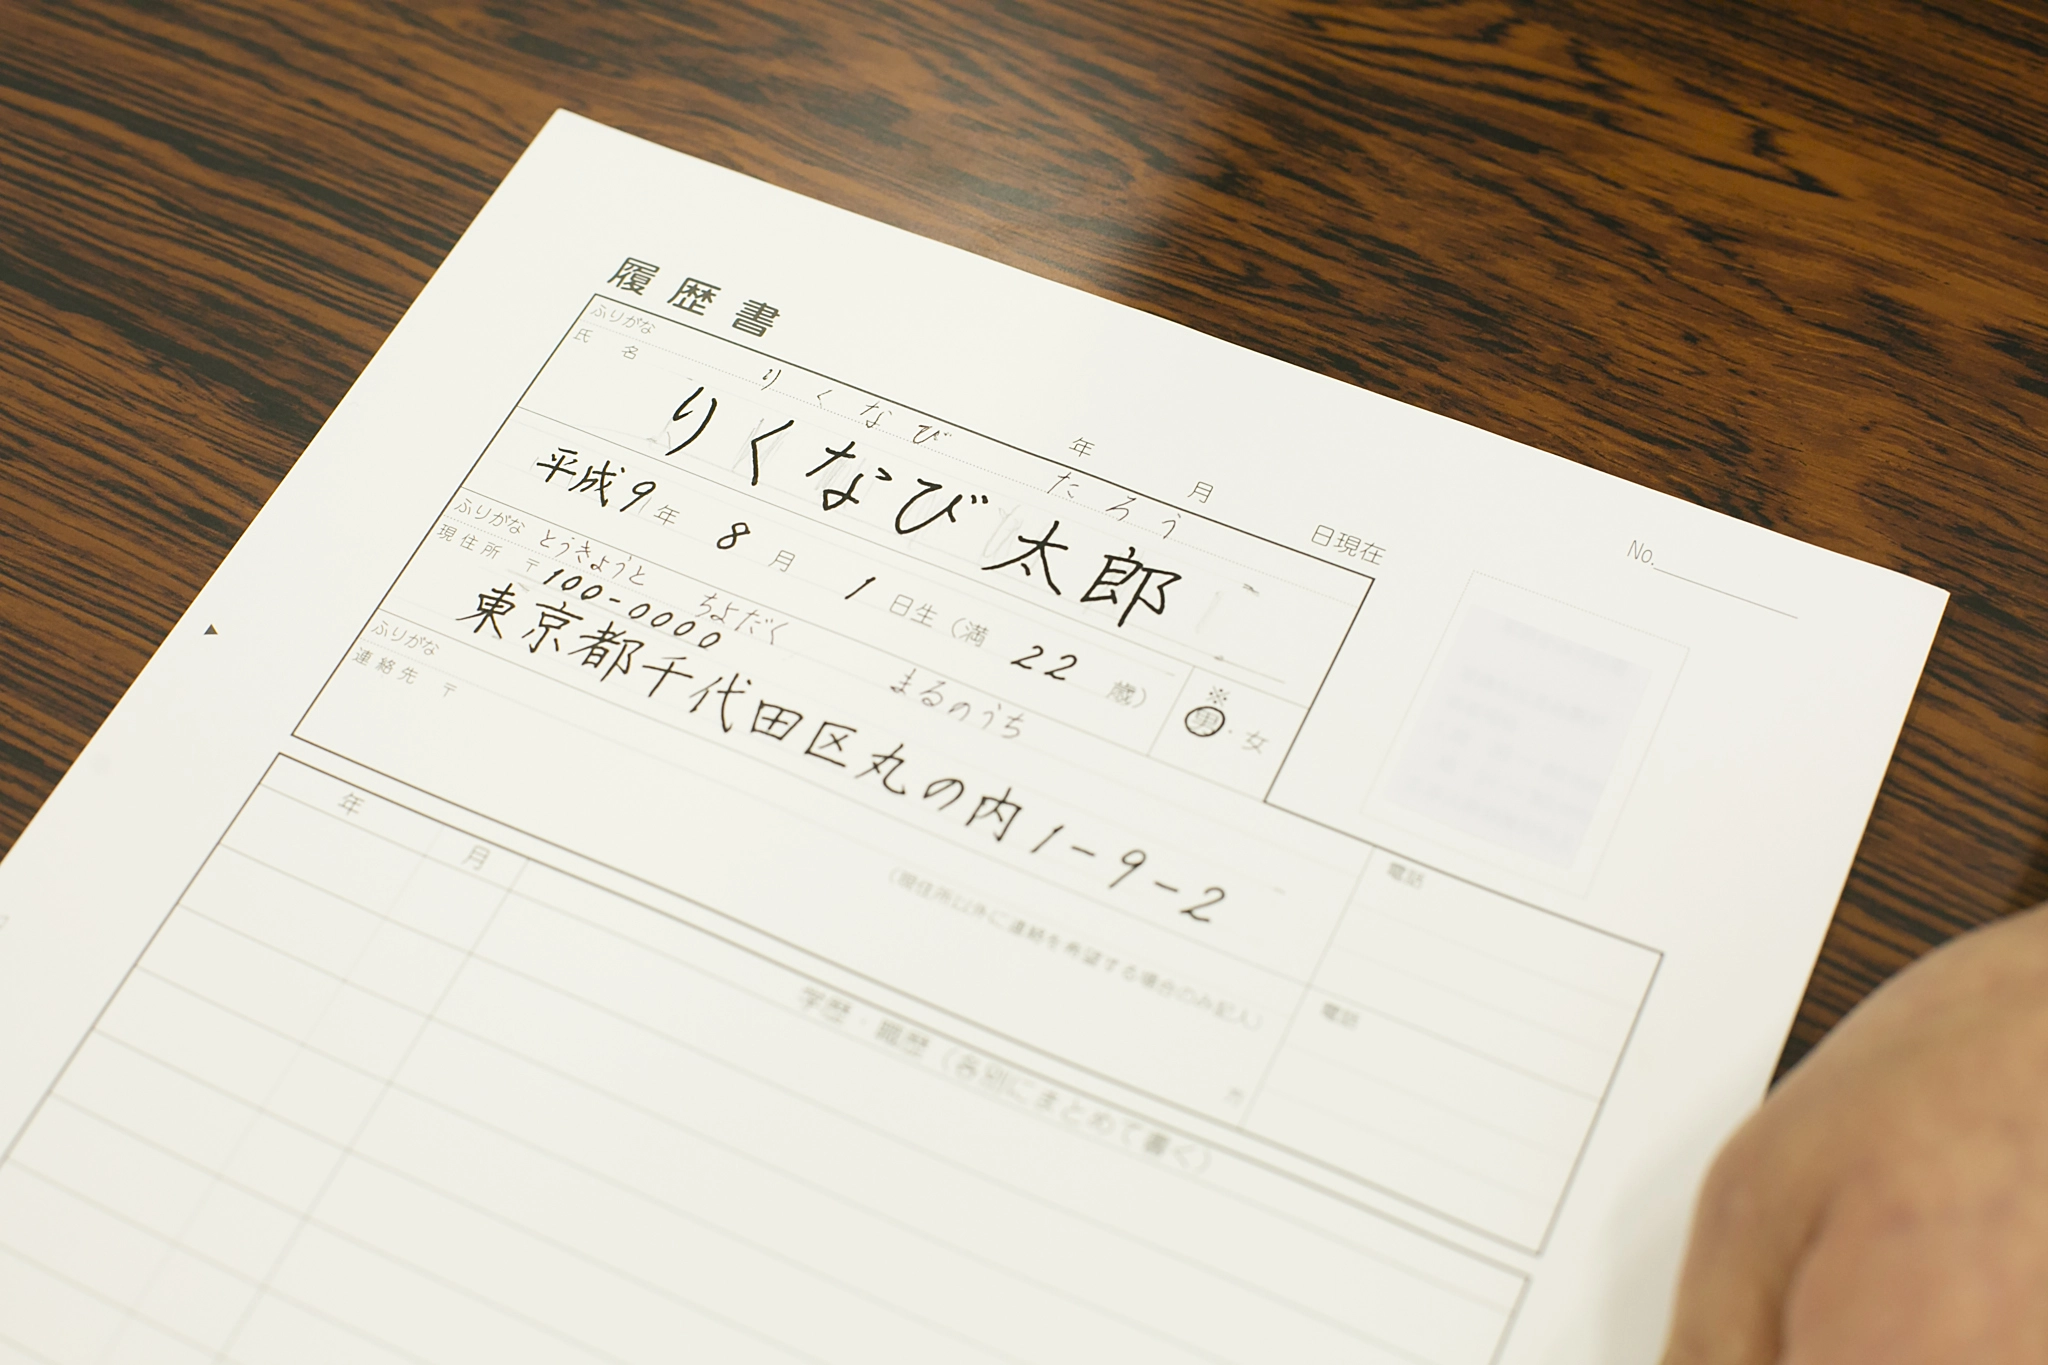 Tìm hiểu cấu trúc ngữ pháp tiếng Nhật và mẹo ghi nhớ nhanh